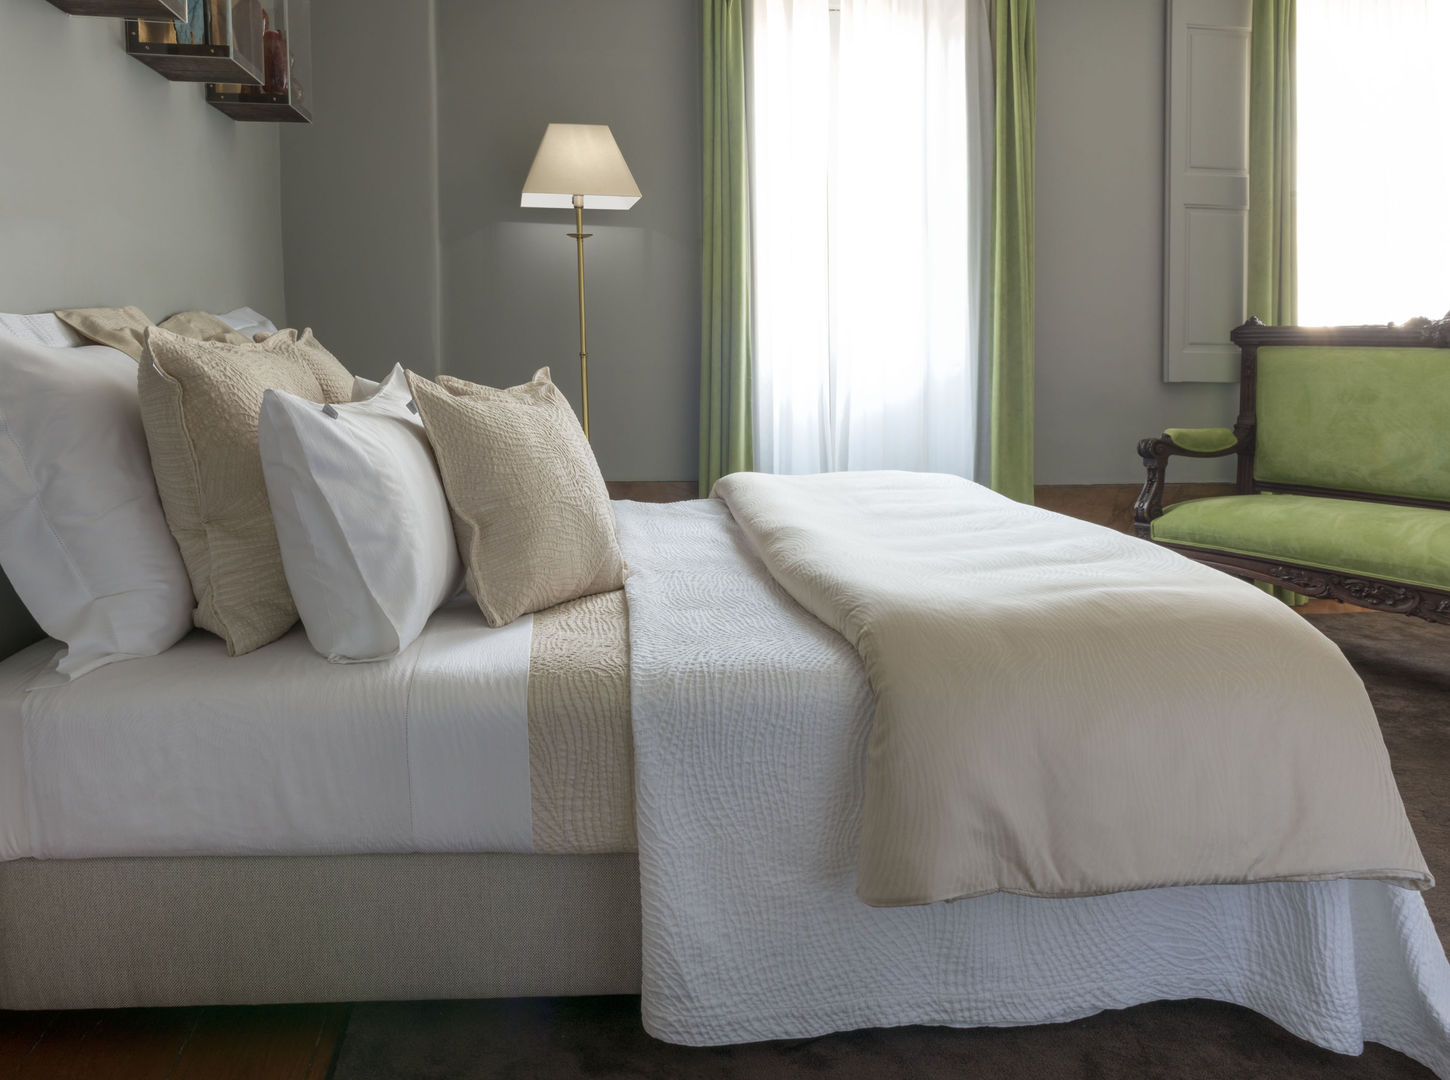 Isadora Paris Luxury Bed Linen - Savanne, Isadora Paris Isadora Paris Habitaciones modernas Textiles